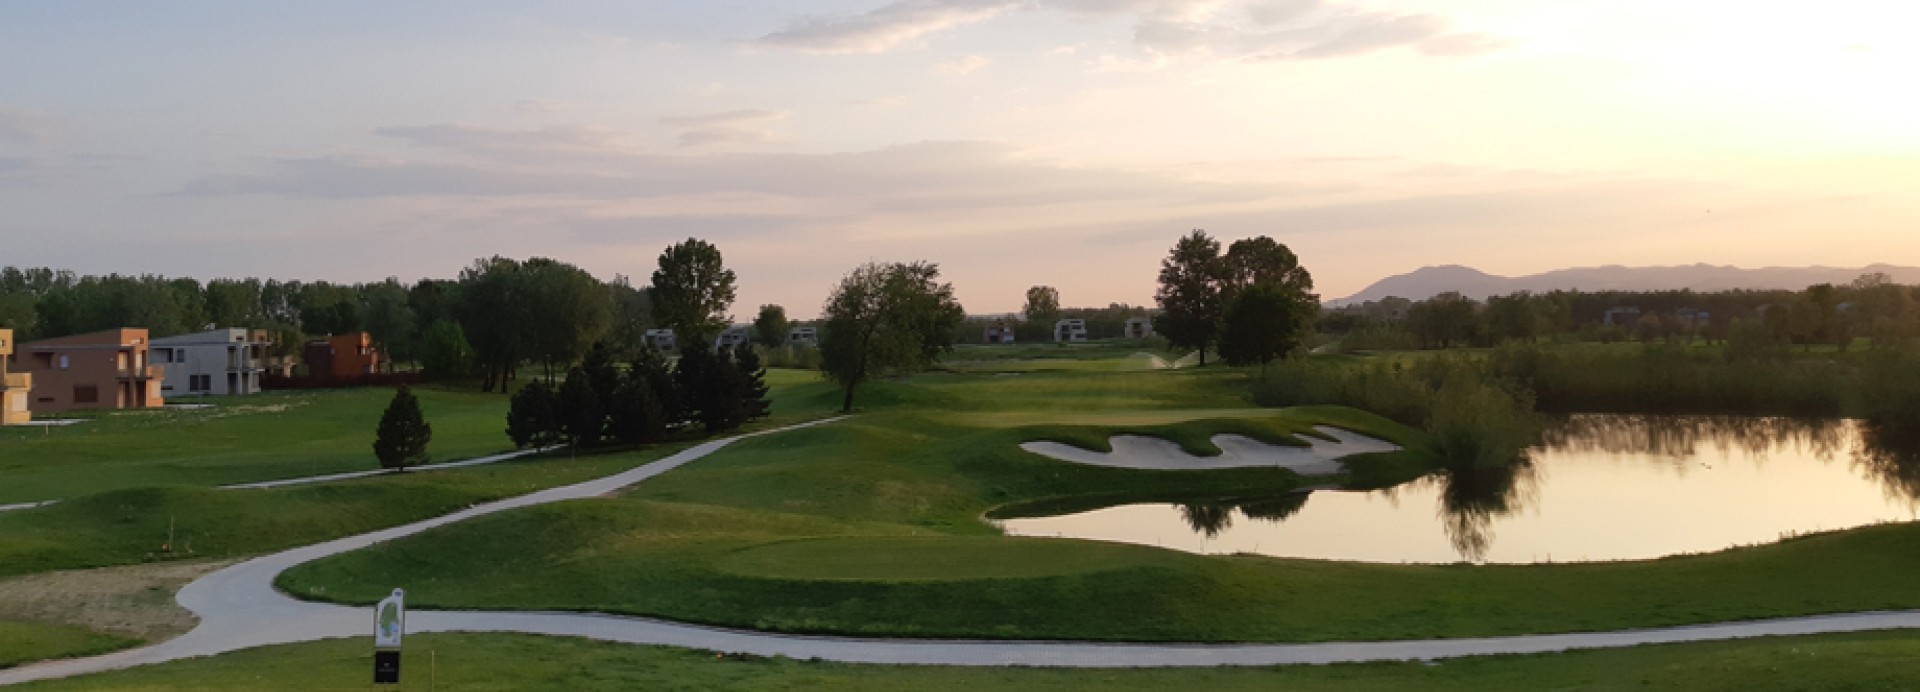 Riverside golf Zagreb  | Golfové zájezdy, golfová dovolená, luxusní golf